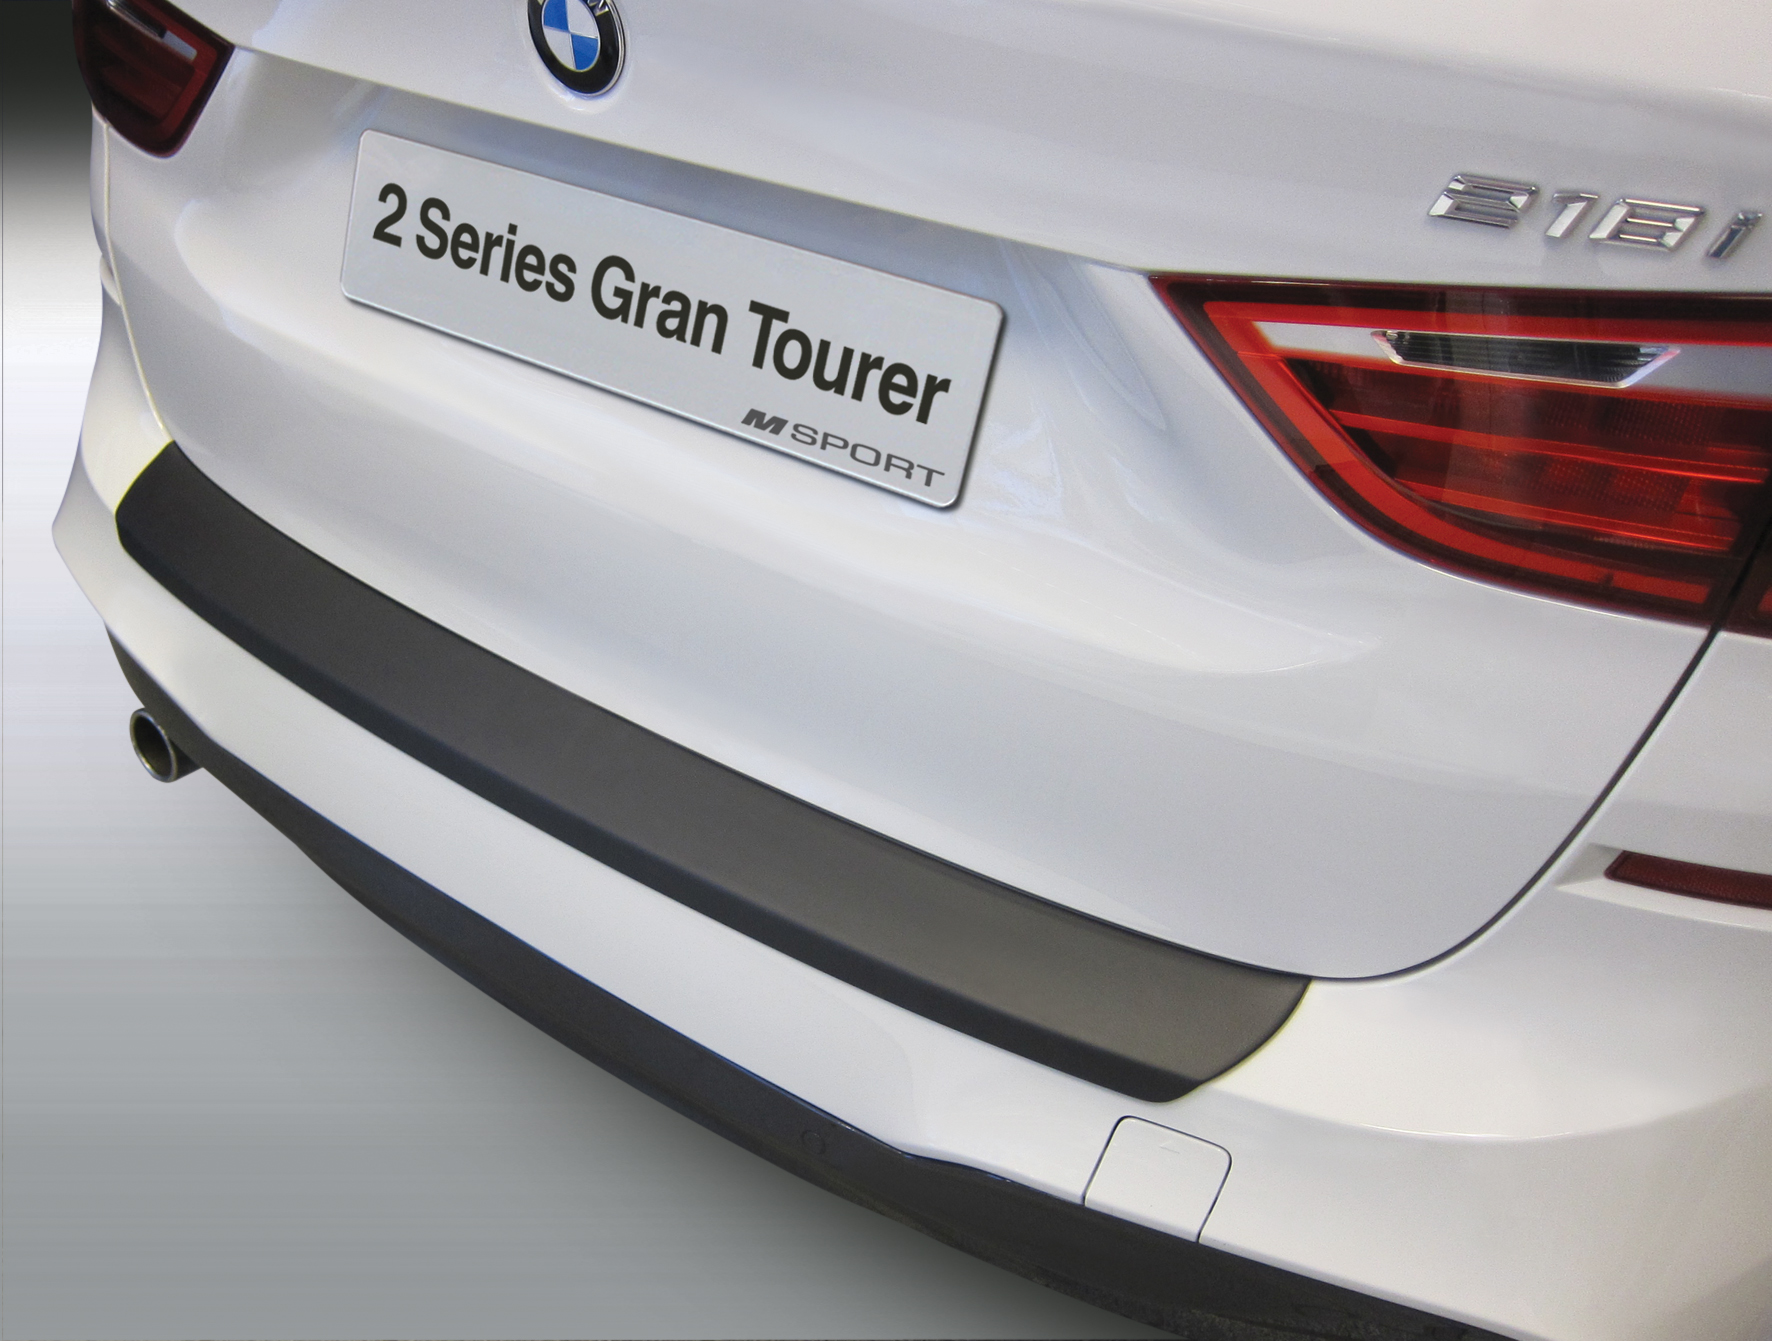 https://www.sonnenschutz-pkw.de/images/product_images/original_images/BMW-2-Series-Gran-Tourer-M-Sport-RBP845.jpg